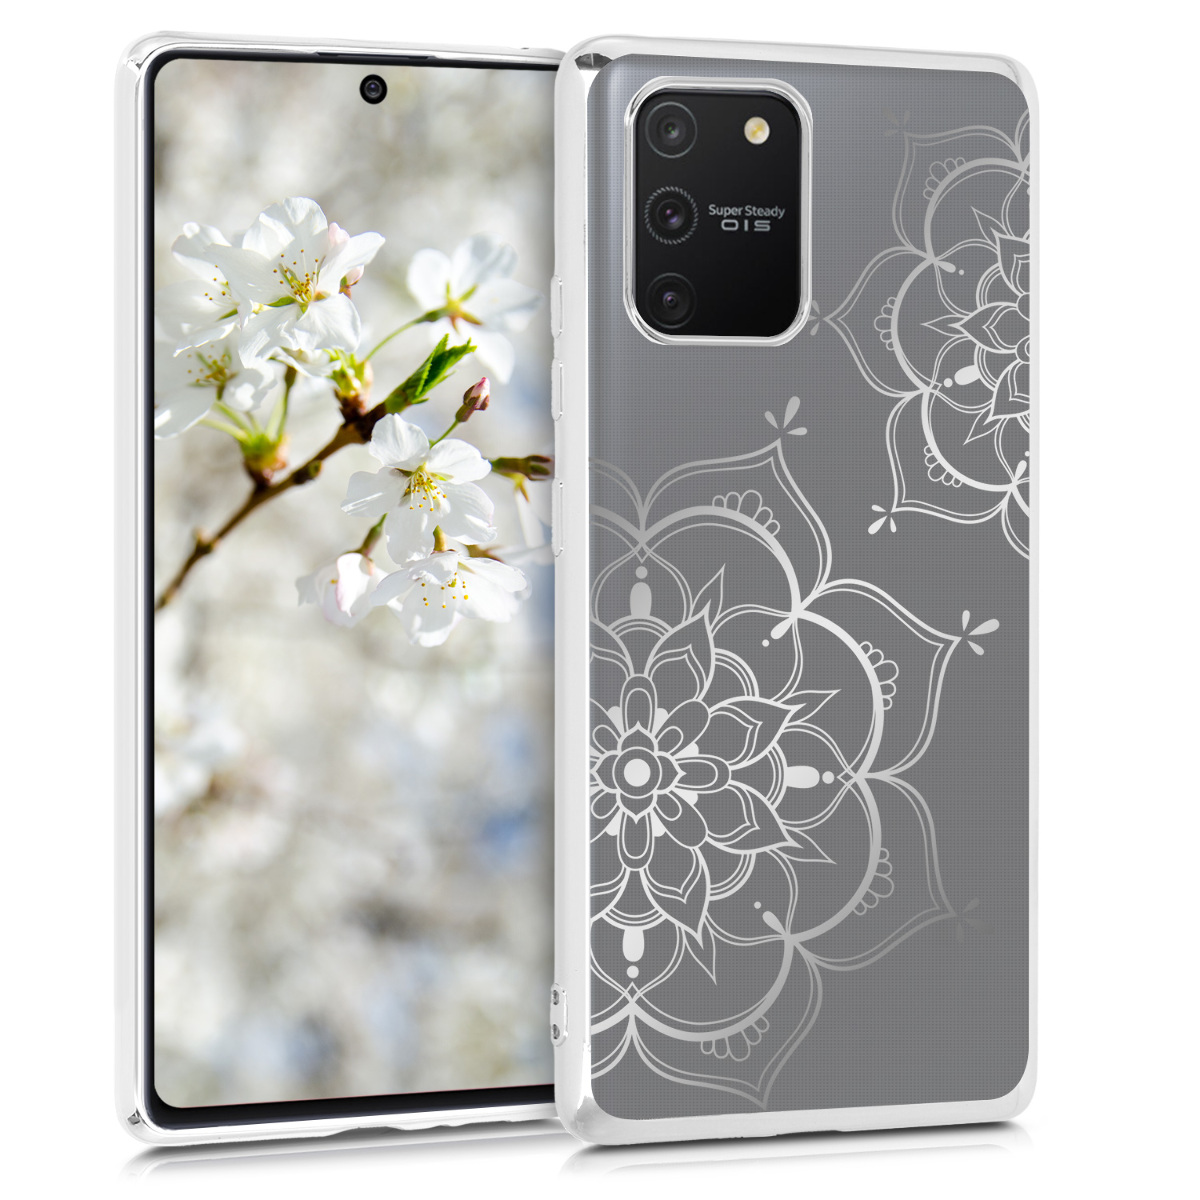 Kvalitní silikonové TPU pouzdro pro Samsung S10 Lite - Flower Twins Silver / Silver / Transparent